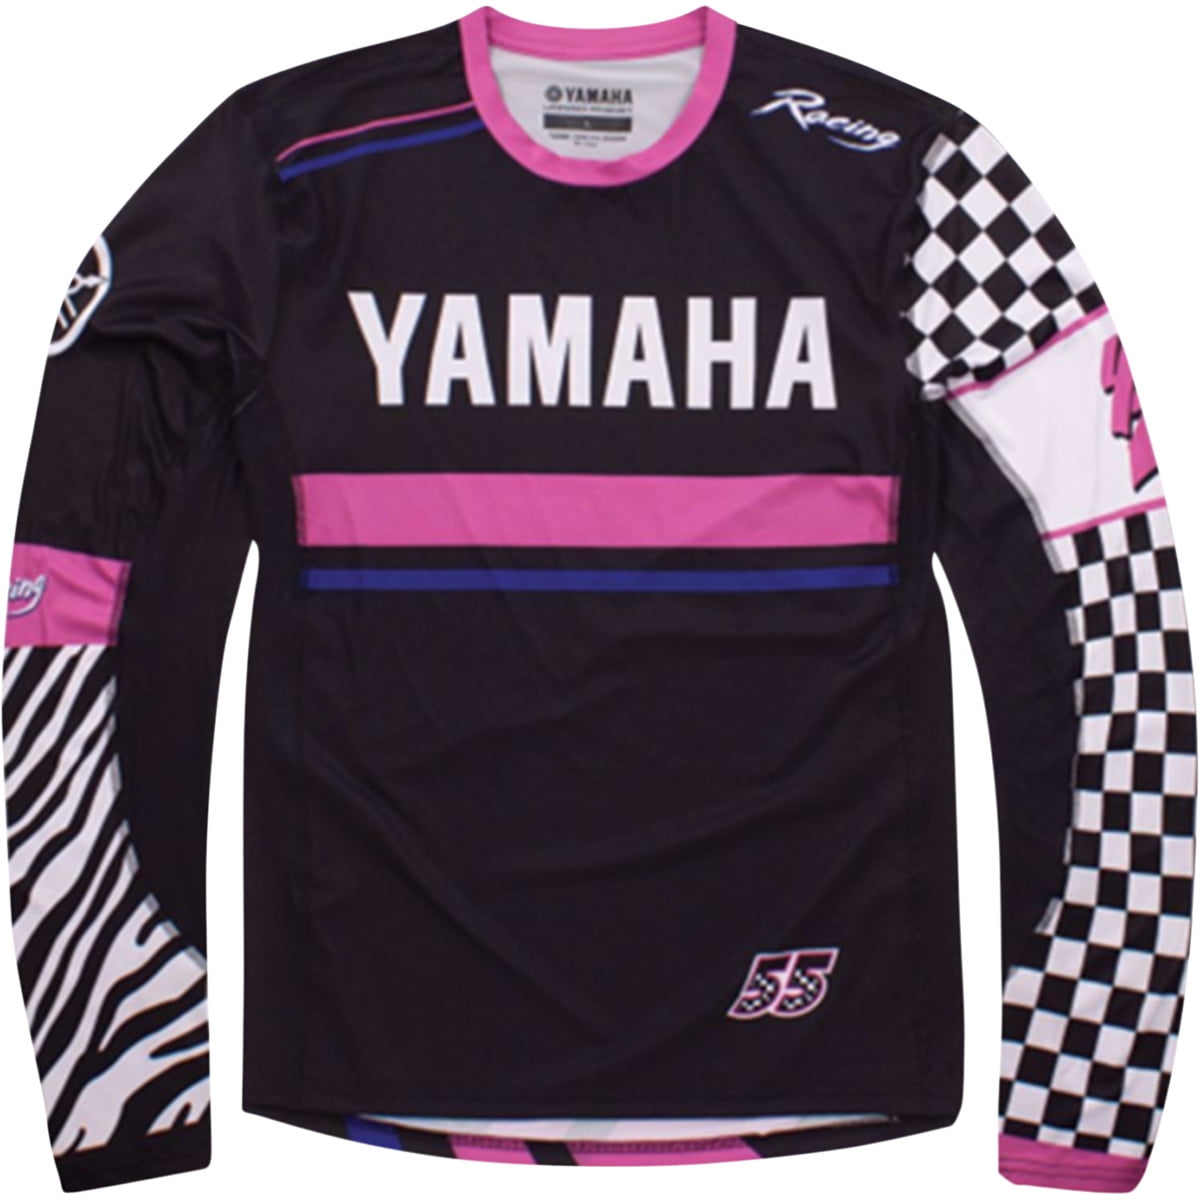 Yamaha Factory Racing T-Shirt Long Sleeve S-5XL Choose Color